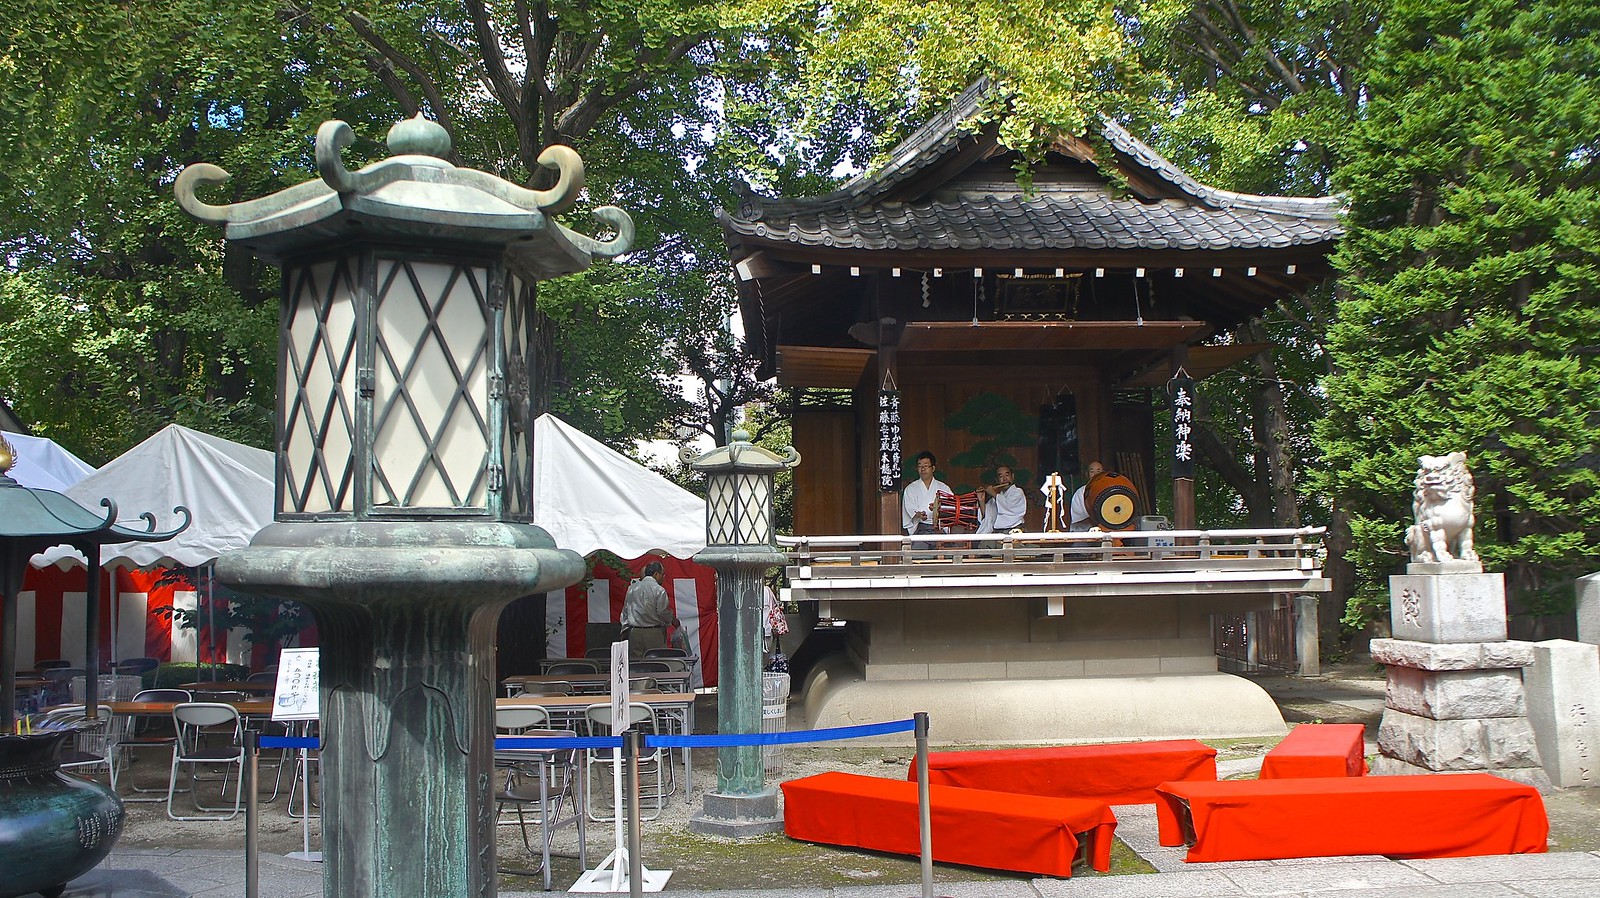 Ganesha Temple in Japan at Asakusa